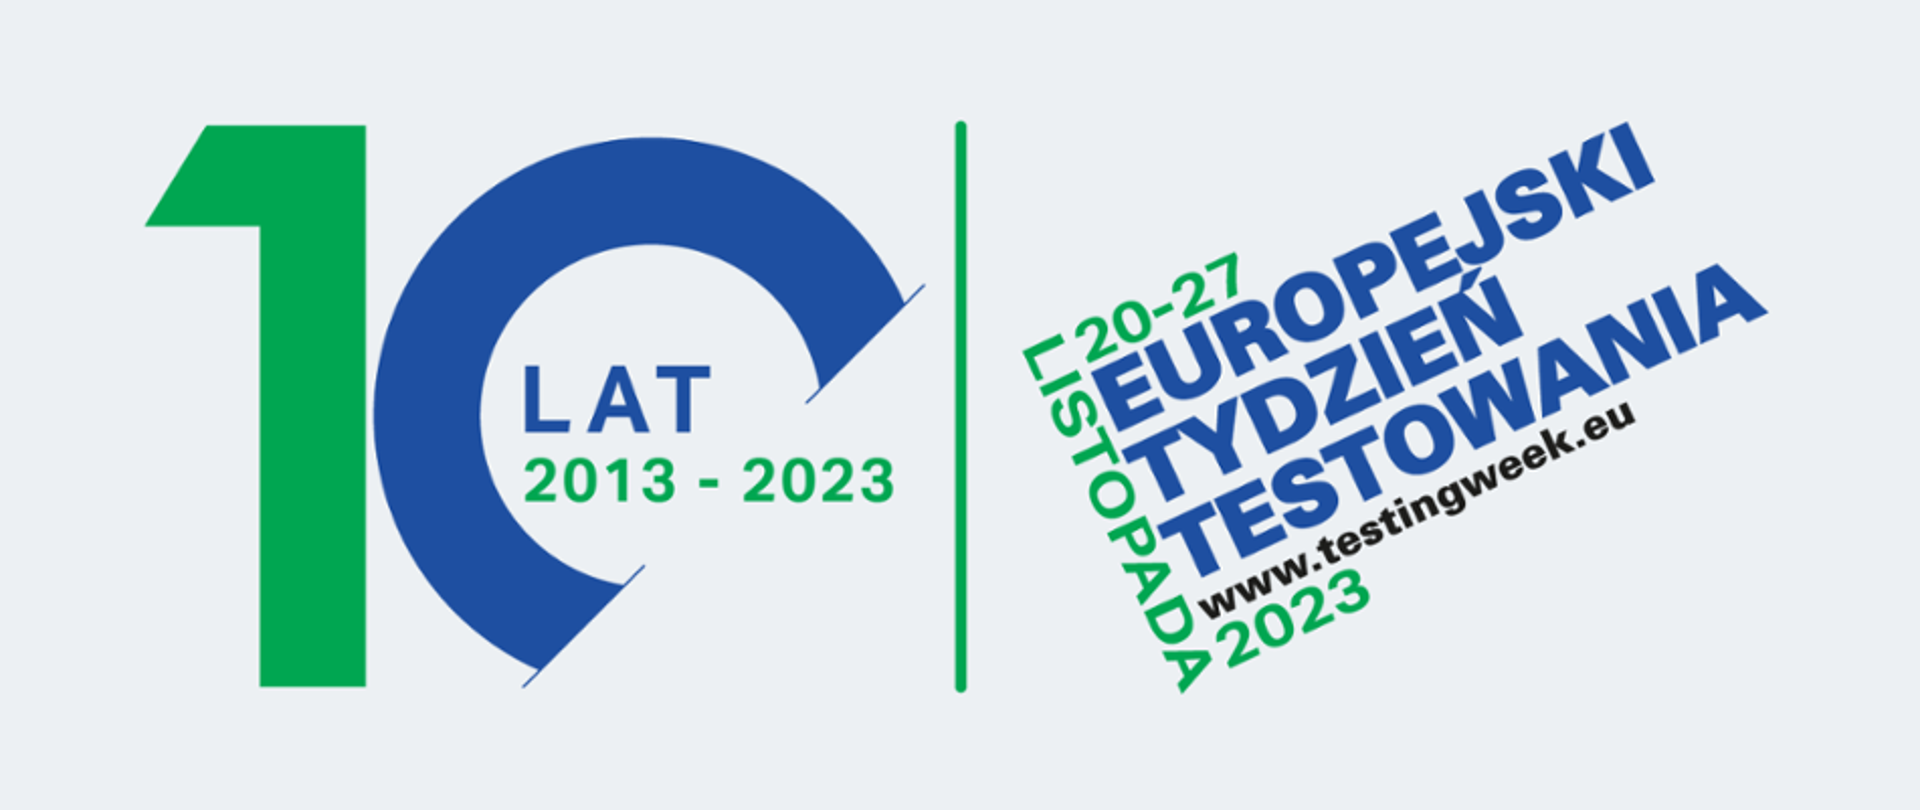 Na zdjęciu widnieje napis 10 lat 2013-2023 2027 Listopada 2023 Europejski Tydzień Testowania 